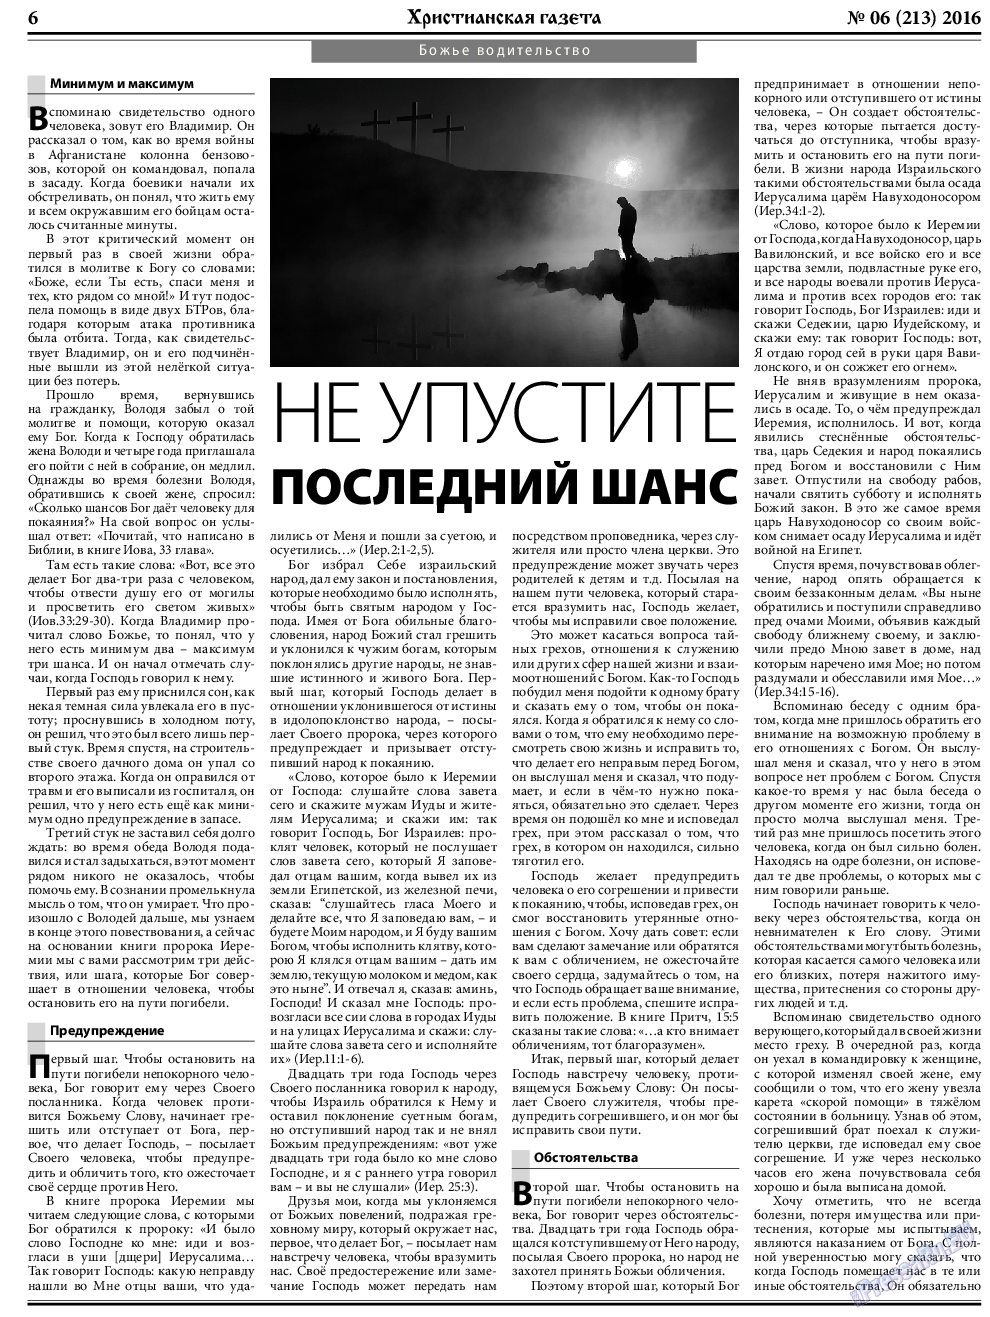 Христианская газета, газета. 2016 №6 стр.6